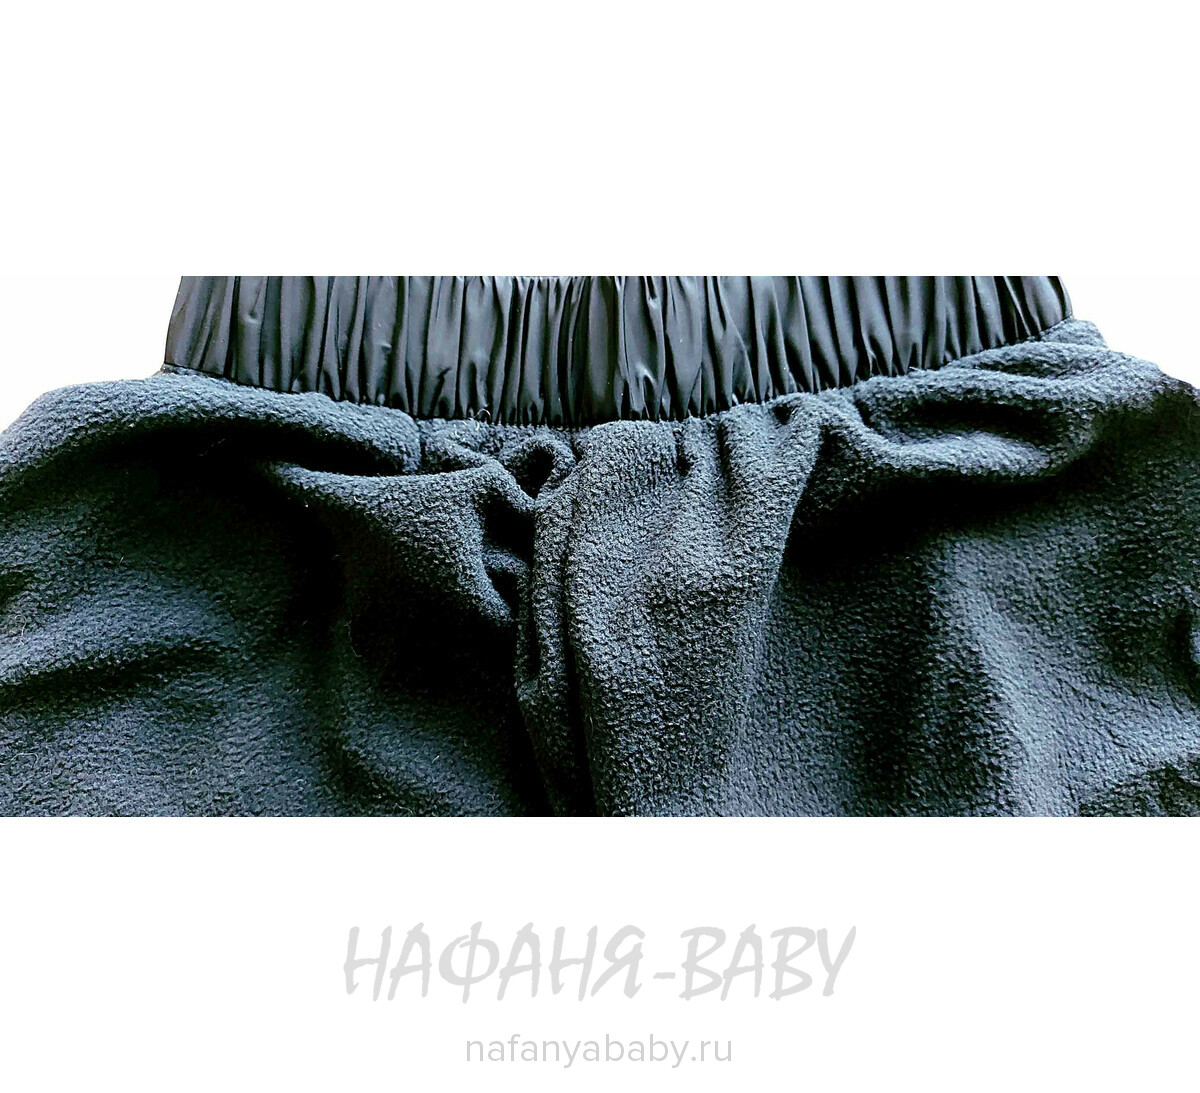 Детские брюки на флисе EMUR, купить в интернет магазине Нафаня. арт: 625.